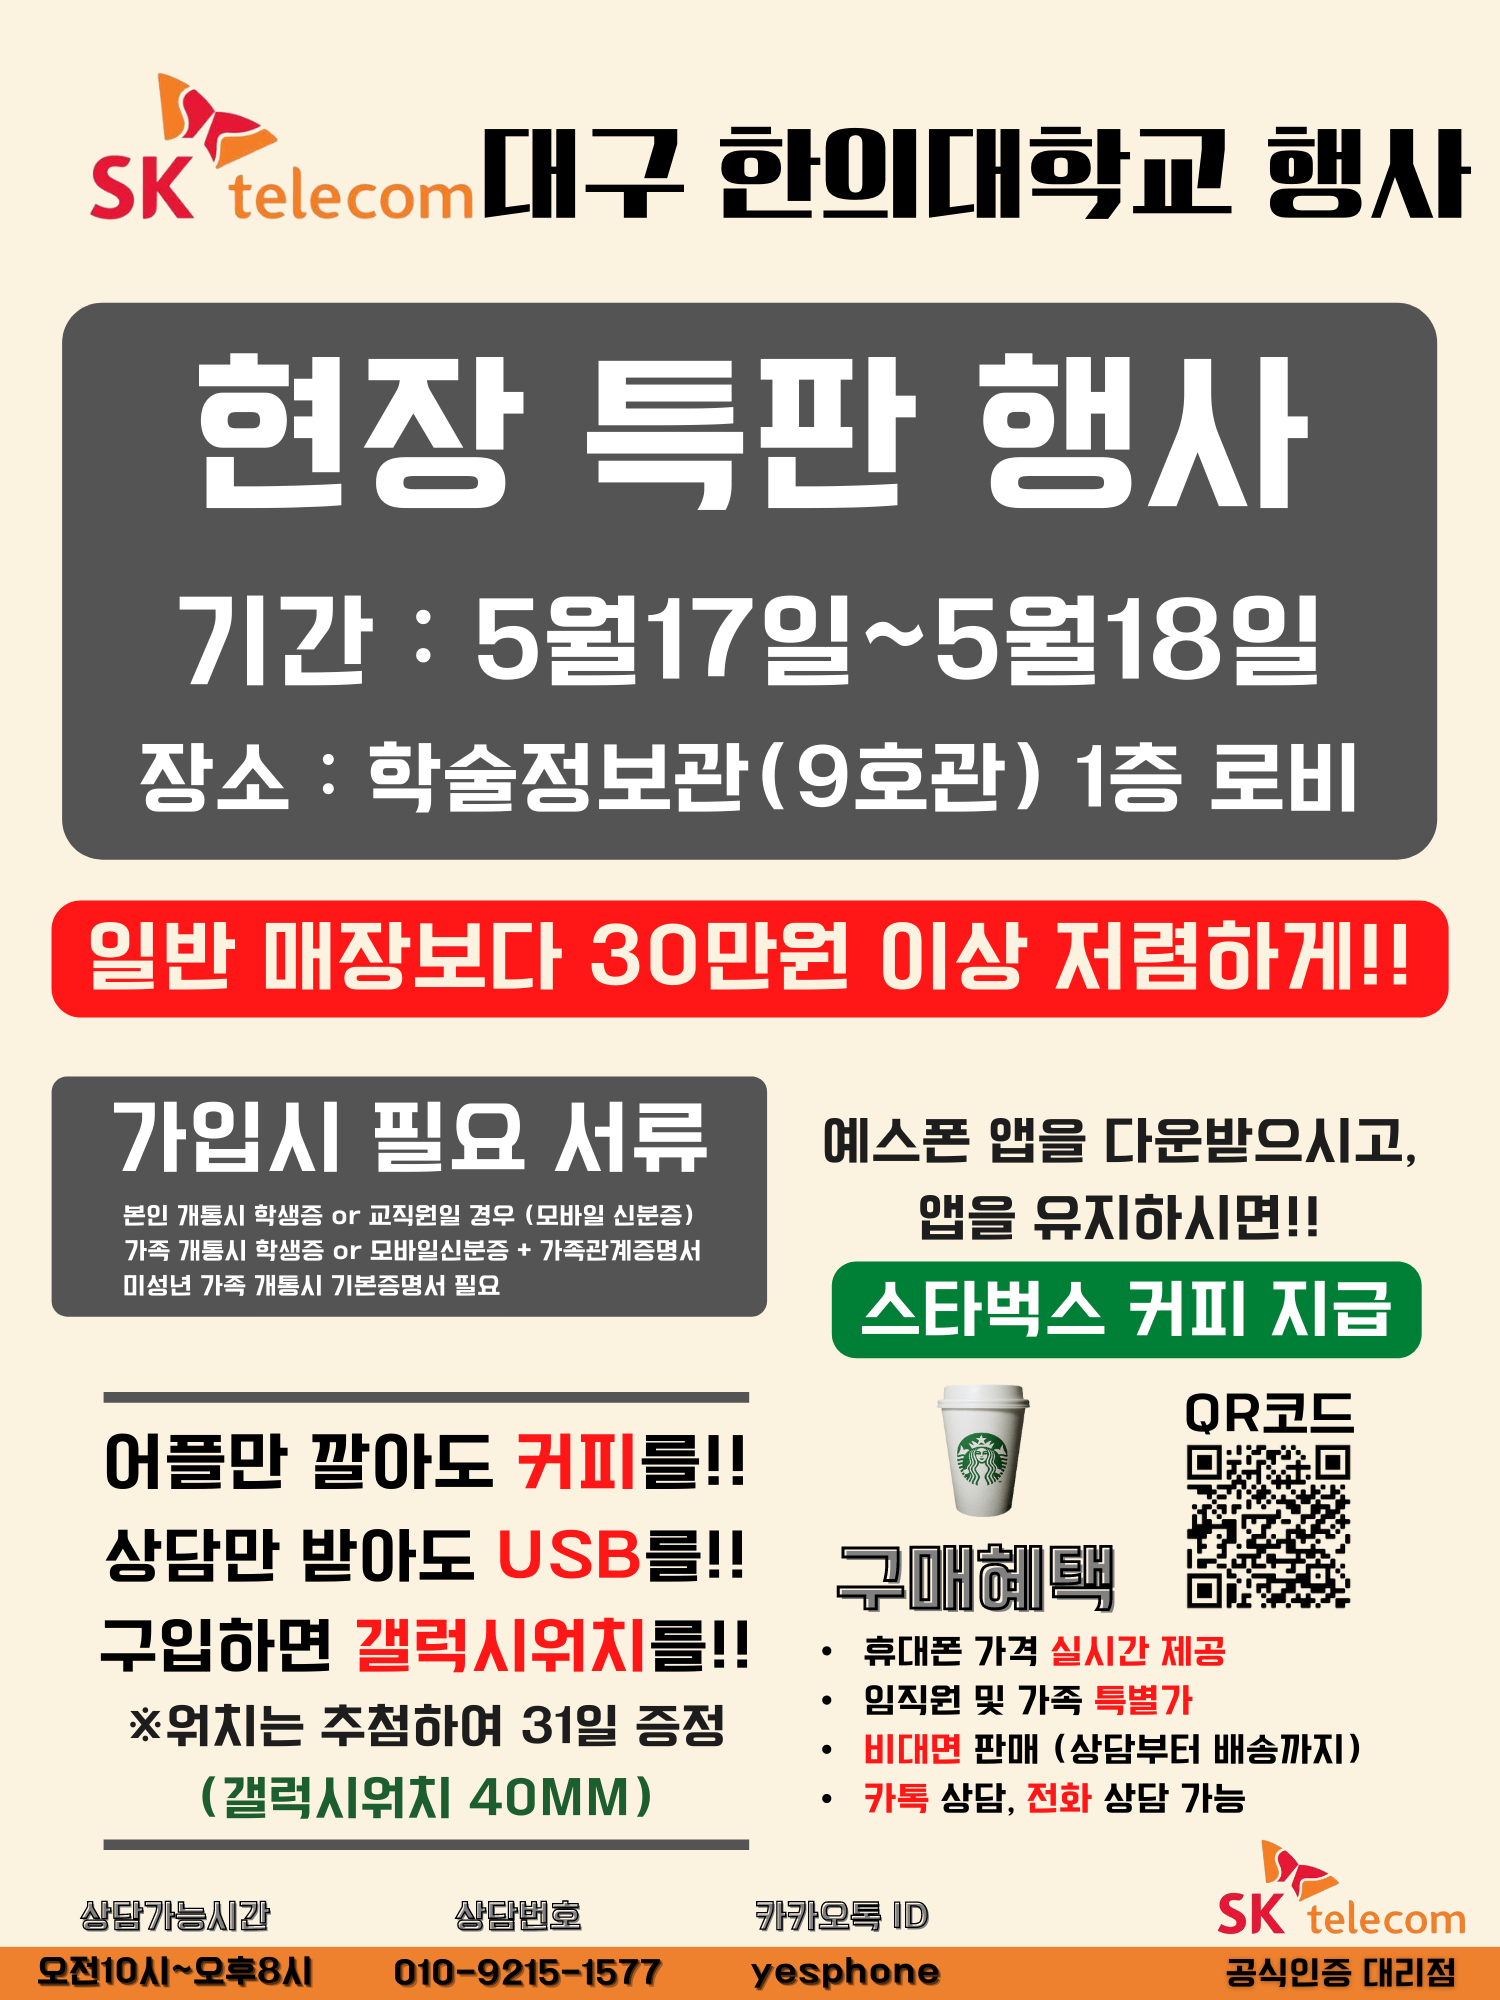 대구한의대학교 함께하는 SKT특판행사(1).png